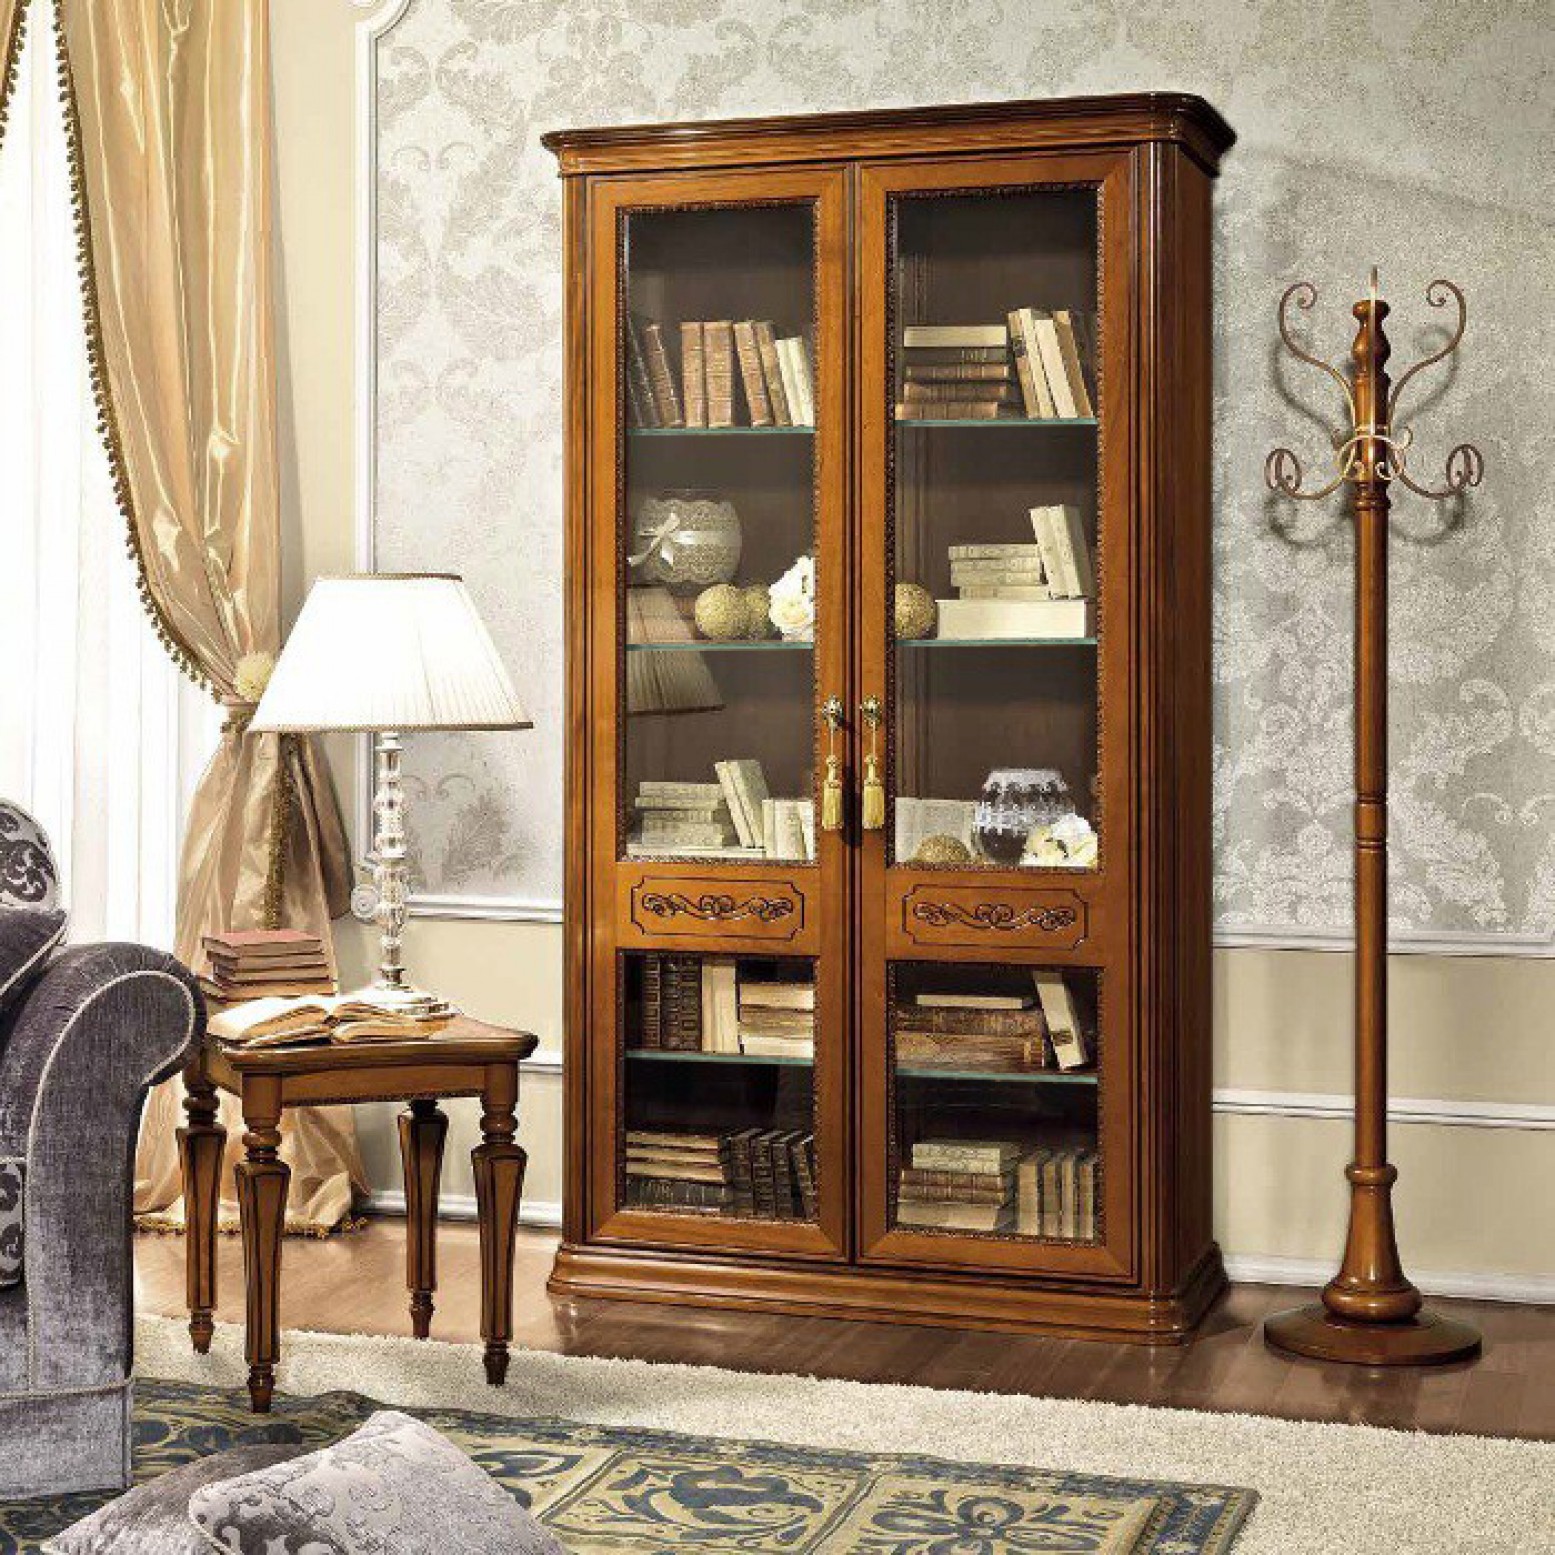 Torriani 2 Door Bookcase W Glass Doors Glass Shelves Walnut Buy